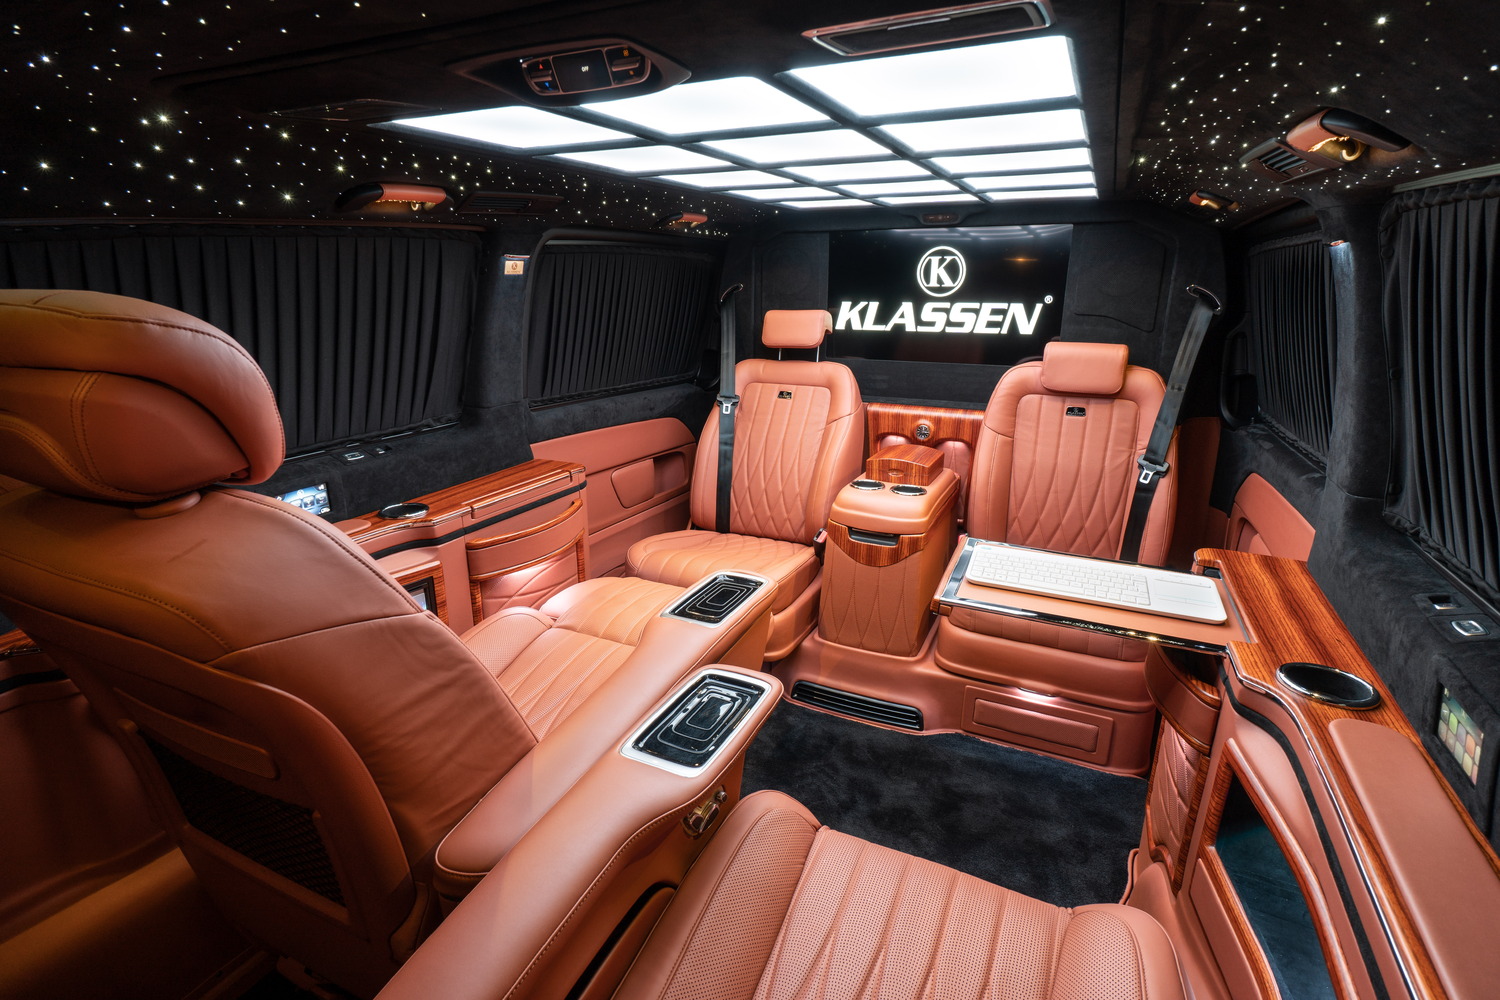 Тюнинг от ателье KLASSEN – способ взглянуть по-новому на ваш Mercedes-Benz V-class, увидеть его сильные стороны и подчеркнуть индивидуальность.